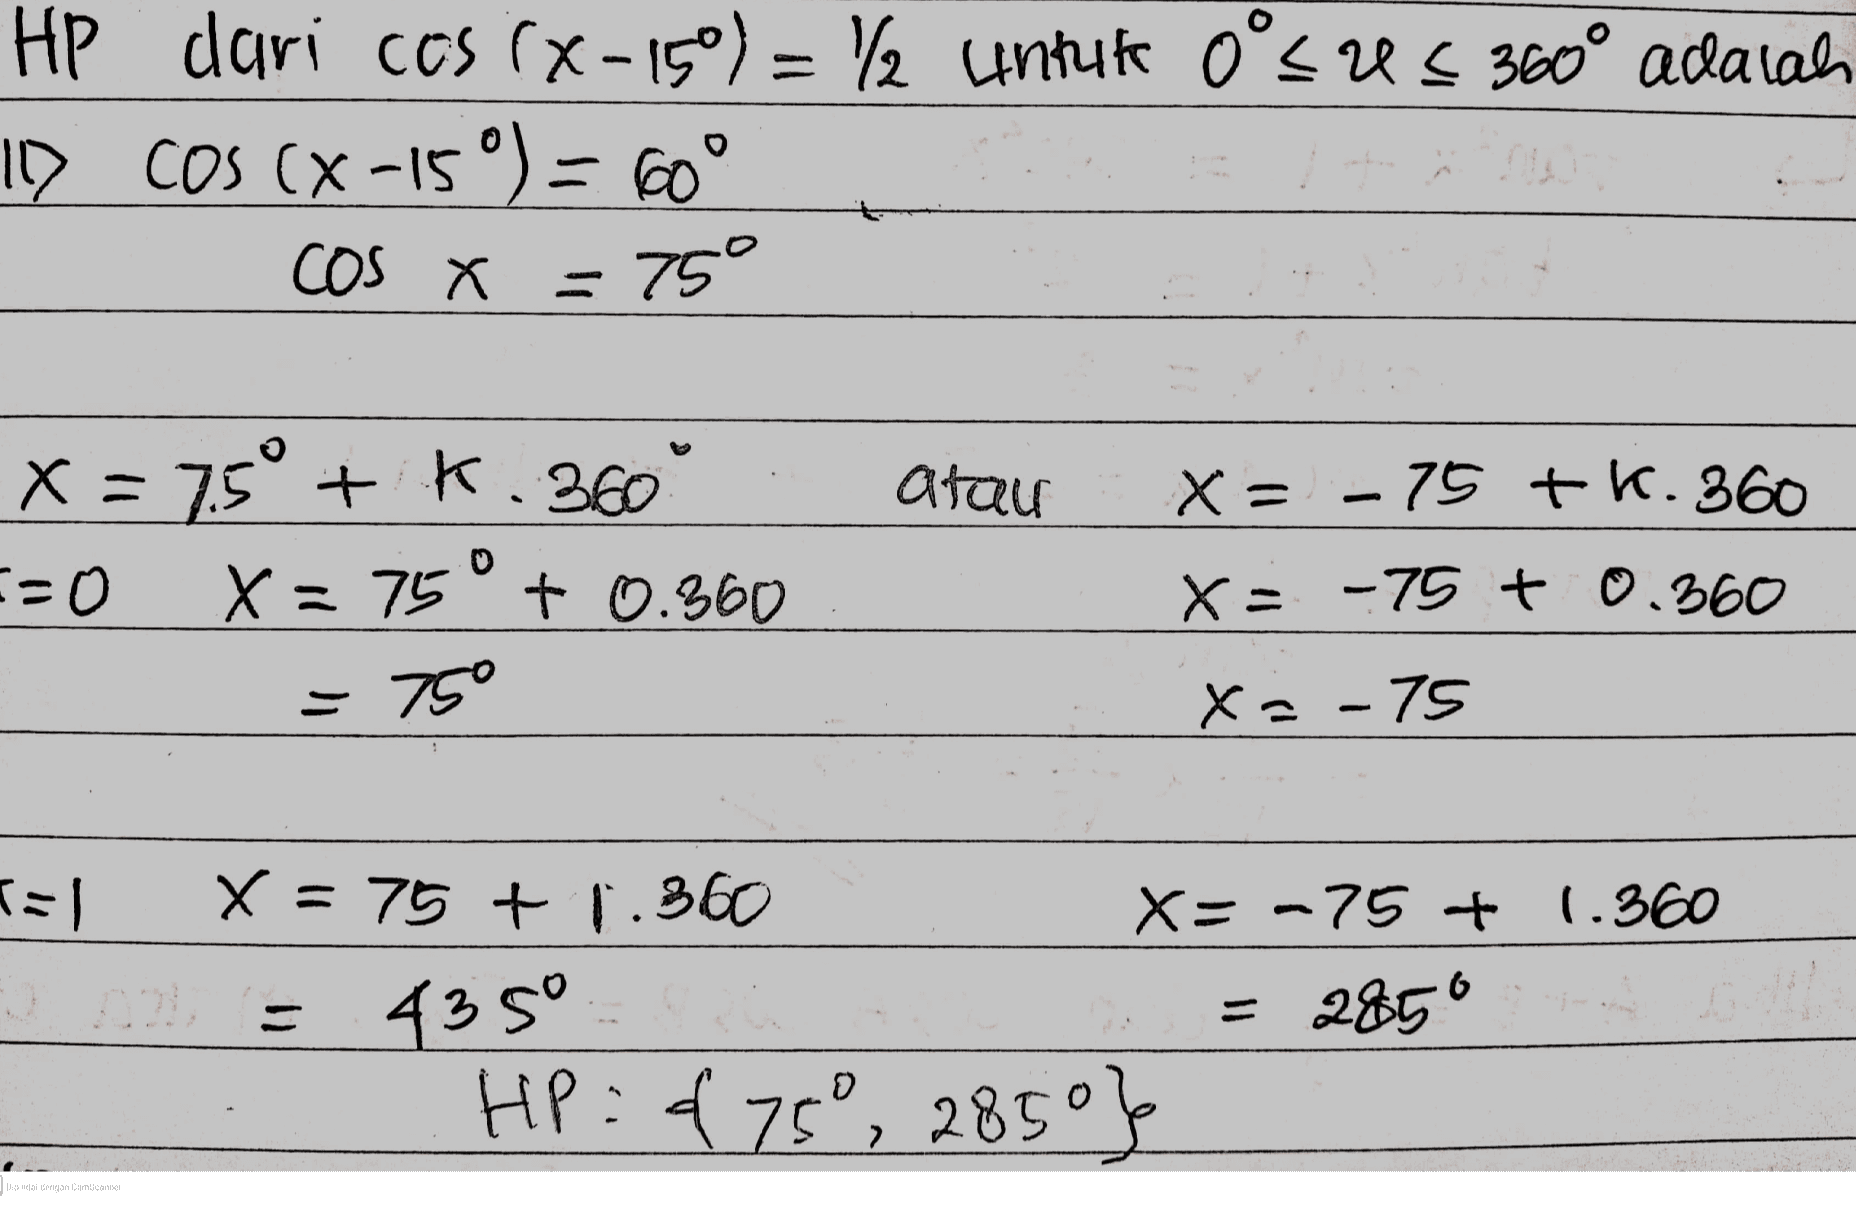 HP dari ces (X -15°) = 12 untuk o'sus 360° adalah 10 COS (X-15°) = 60° cOS X = 75° atau X = 7.5° + K.360 E=0 X= 75° + 0.360 X = -75 tk. 360 x= -75 + 0.360 = 750 X=-75 tal X = 75 +1.360 X=-75 + 1.360 435° = 2850 HP = d75°, 285°} Dipindai dengan CamScanner 